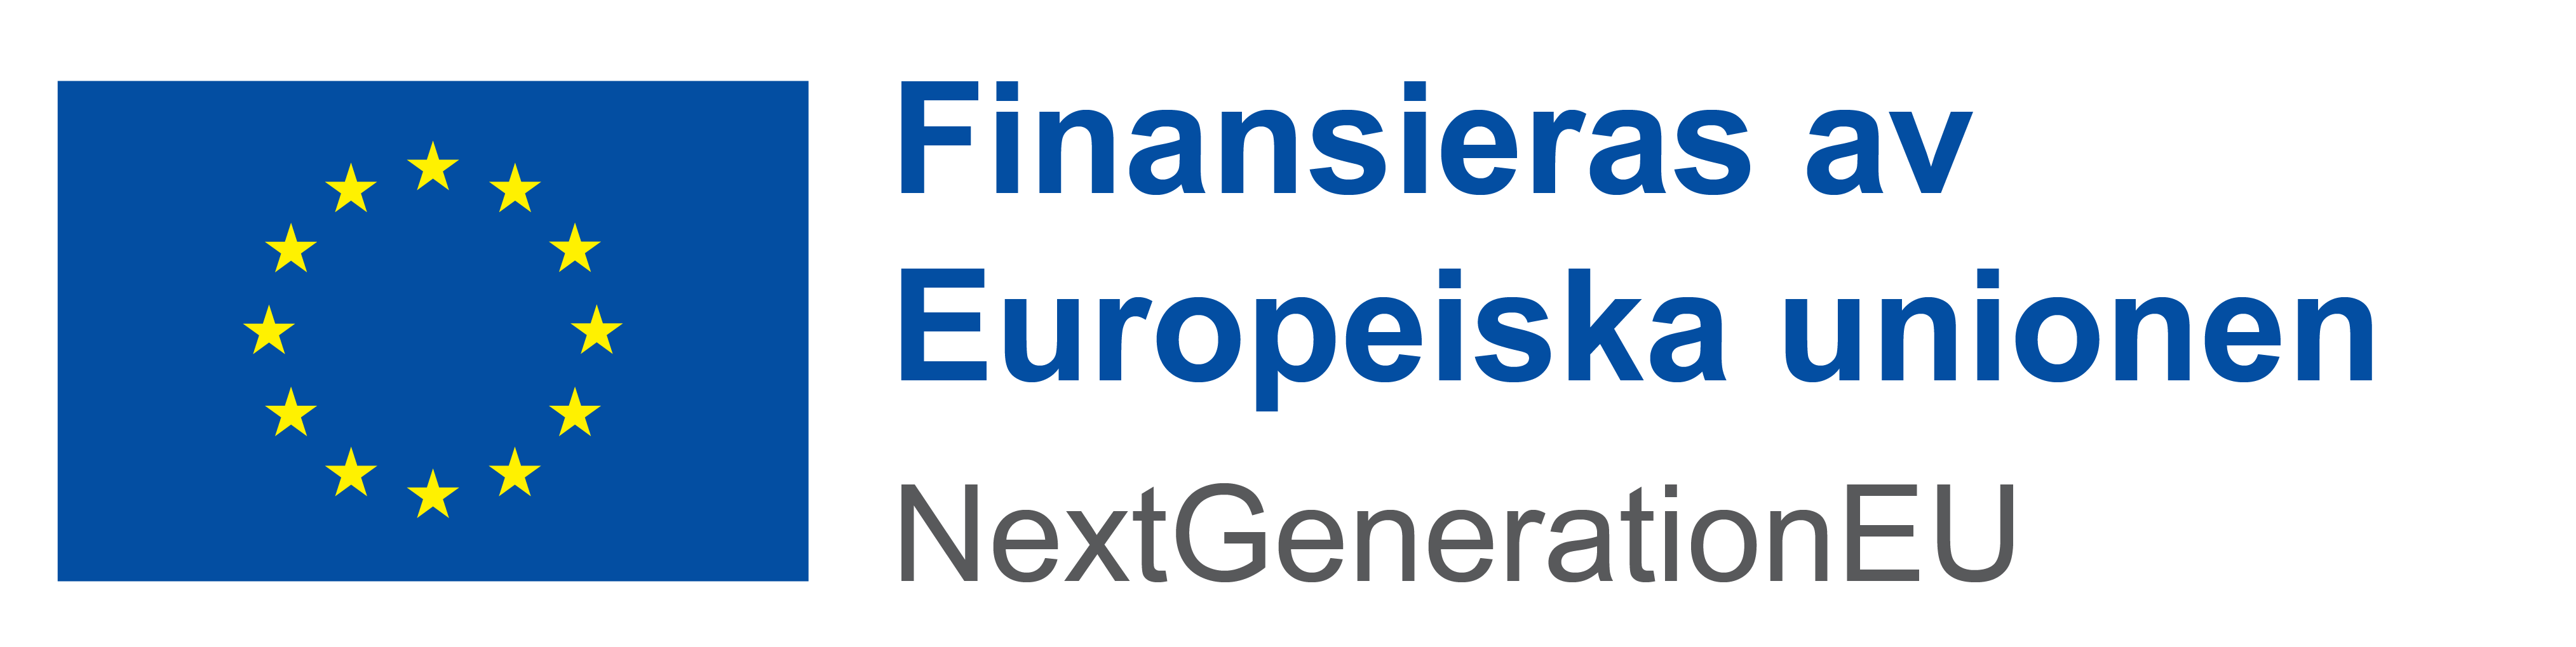 Finansieras av Europieska unionen: Next Generation EU.